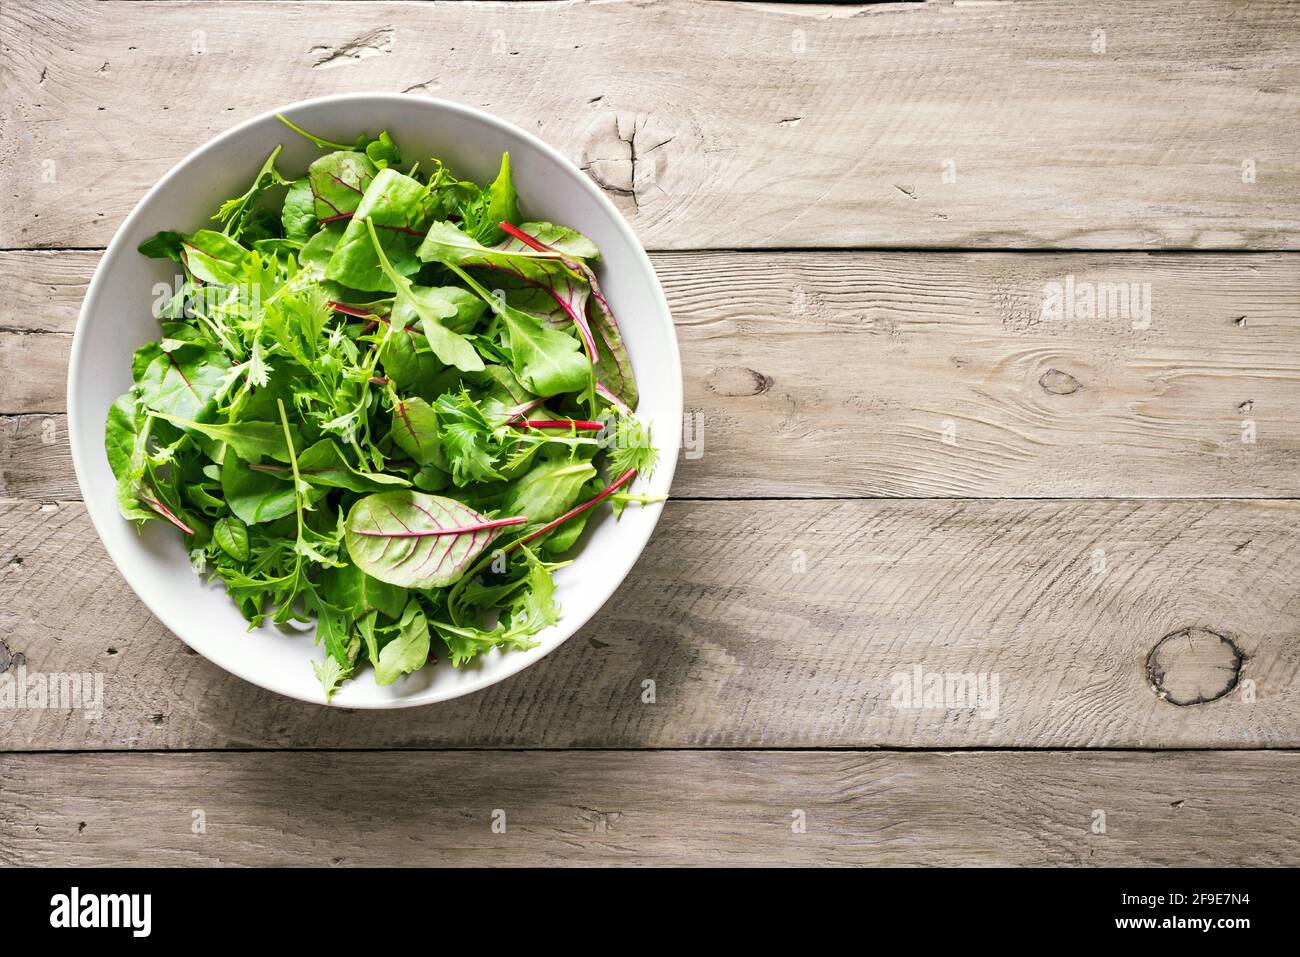 Insalata verde sana, foglie biologiche fresche mescolano insalata con rucola, bietola svizzera e lattuga, sfondo in legno, vista dall'alto, spazio copia. Foto Stock